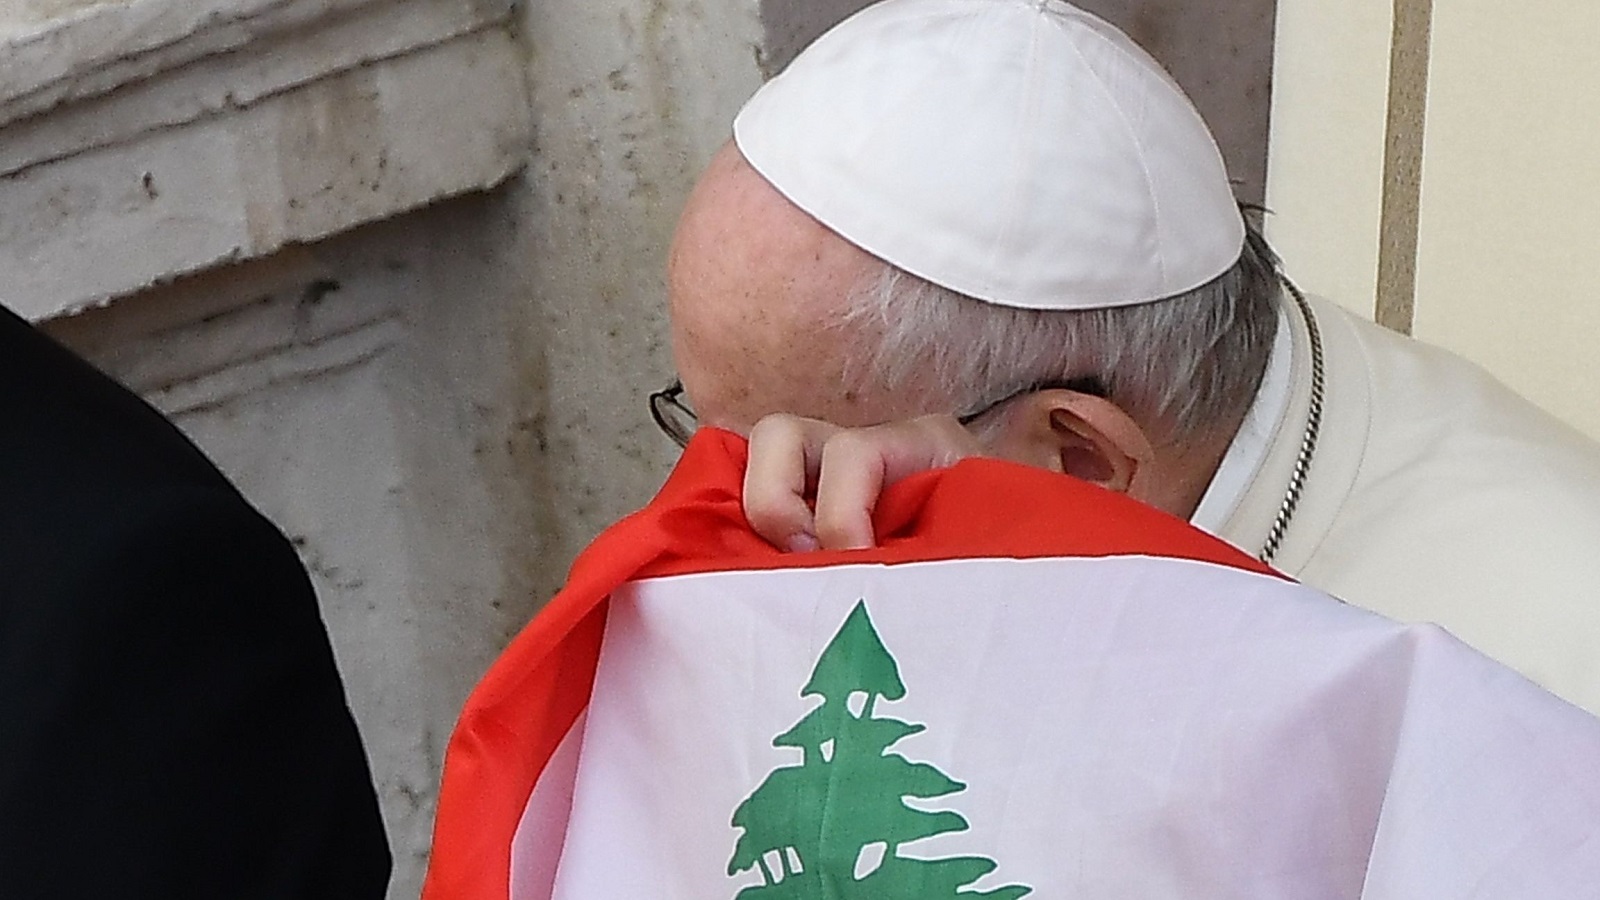 البابا يزور لبنان لتكريس نهائيته ووحدته.. ولرئيس جديد "مستقلّ"